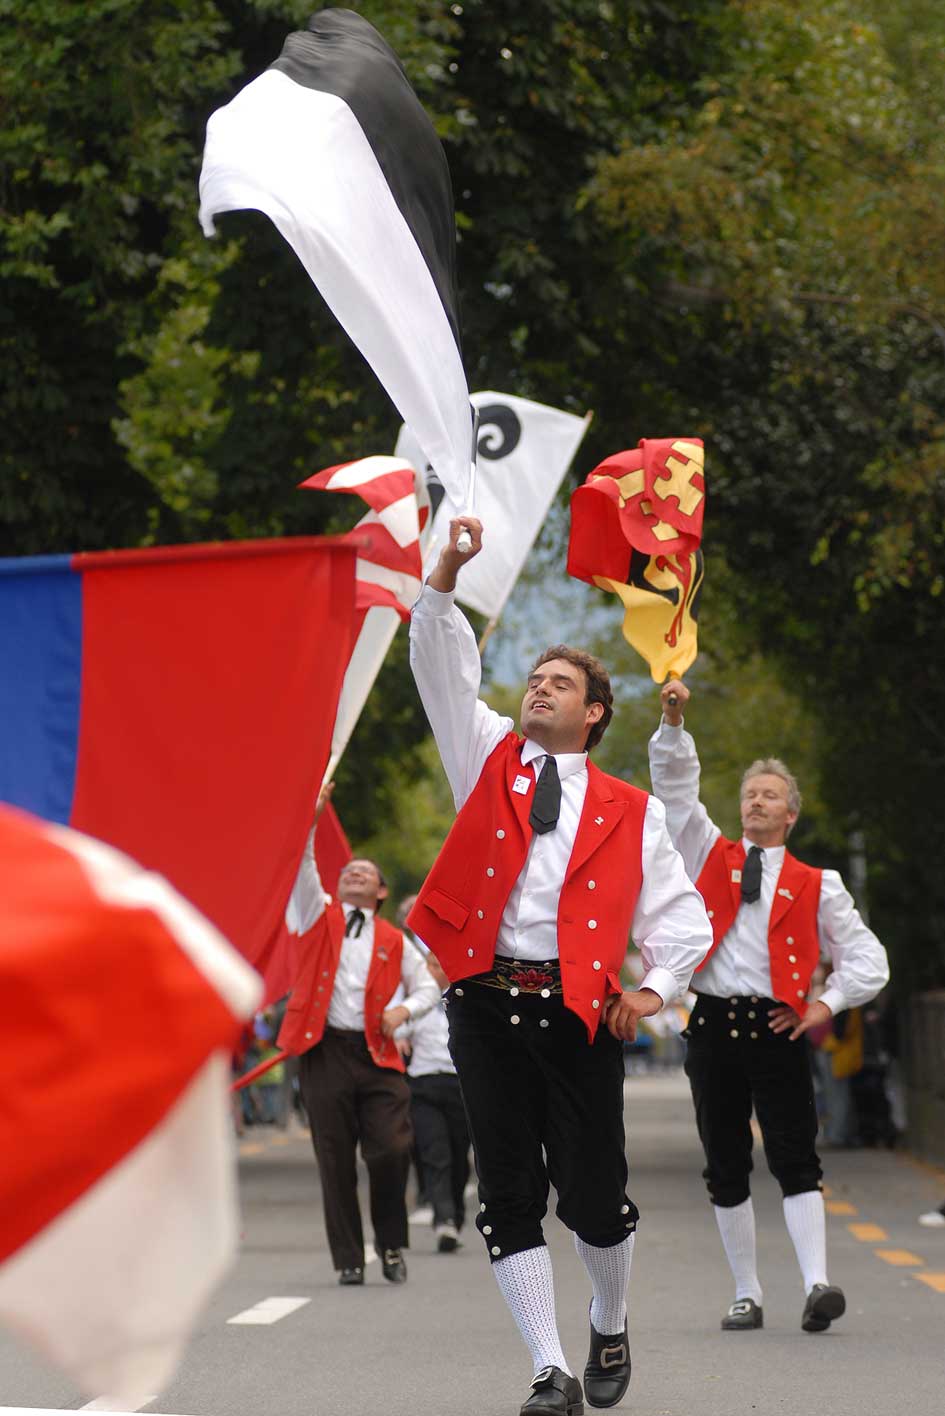 Flag-bearers taking part in the procession at the 2006 Unspunnen festival © Steiner/Verein Schweizerisches Trachten- und Alphirtenfest Unspunnen